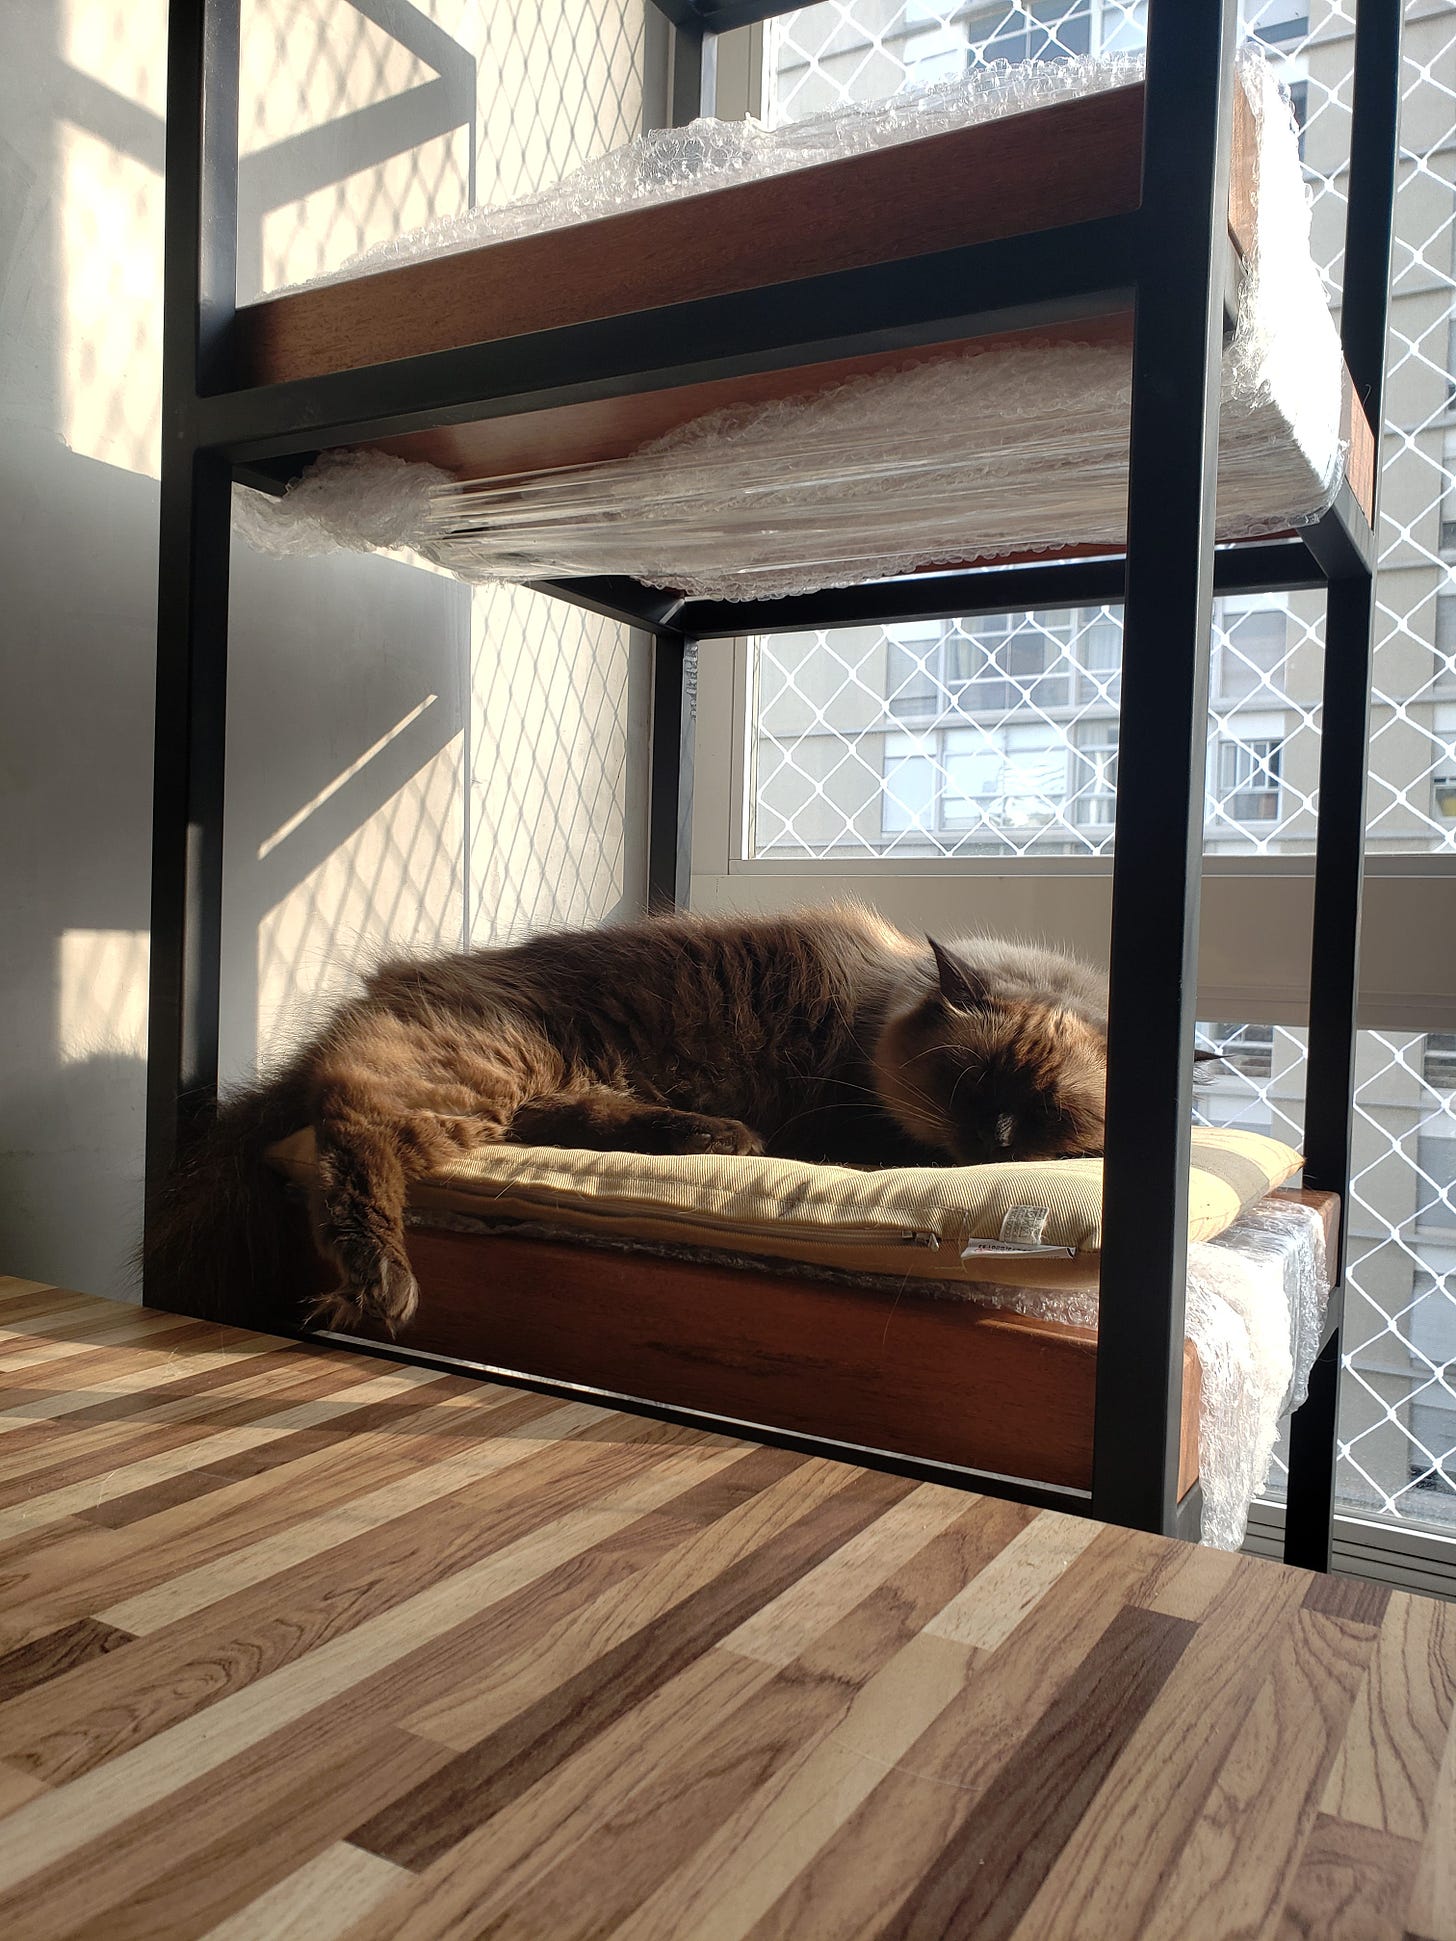 Imagem colorida: gata Morgana deitada numa estante sobre a sua almofada sob os raios de sol da manhã.